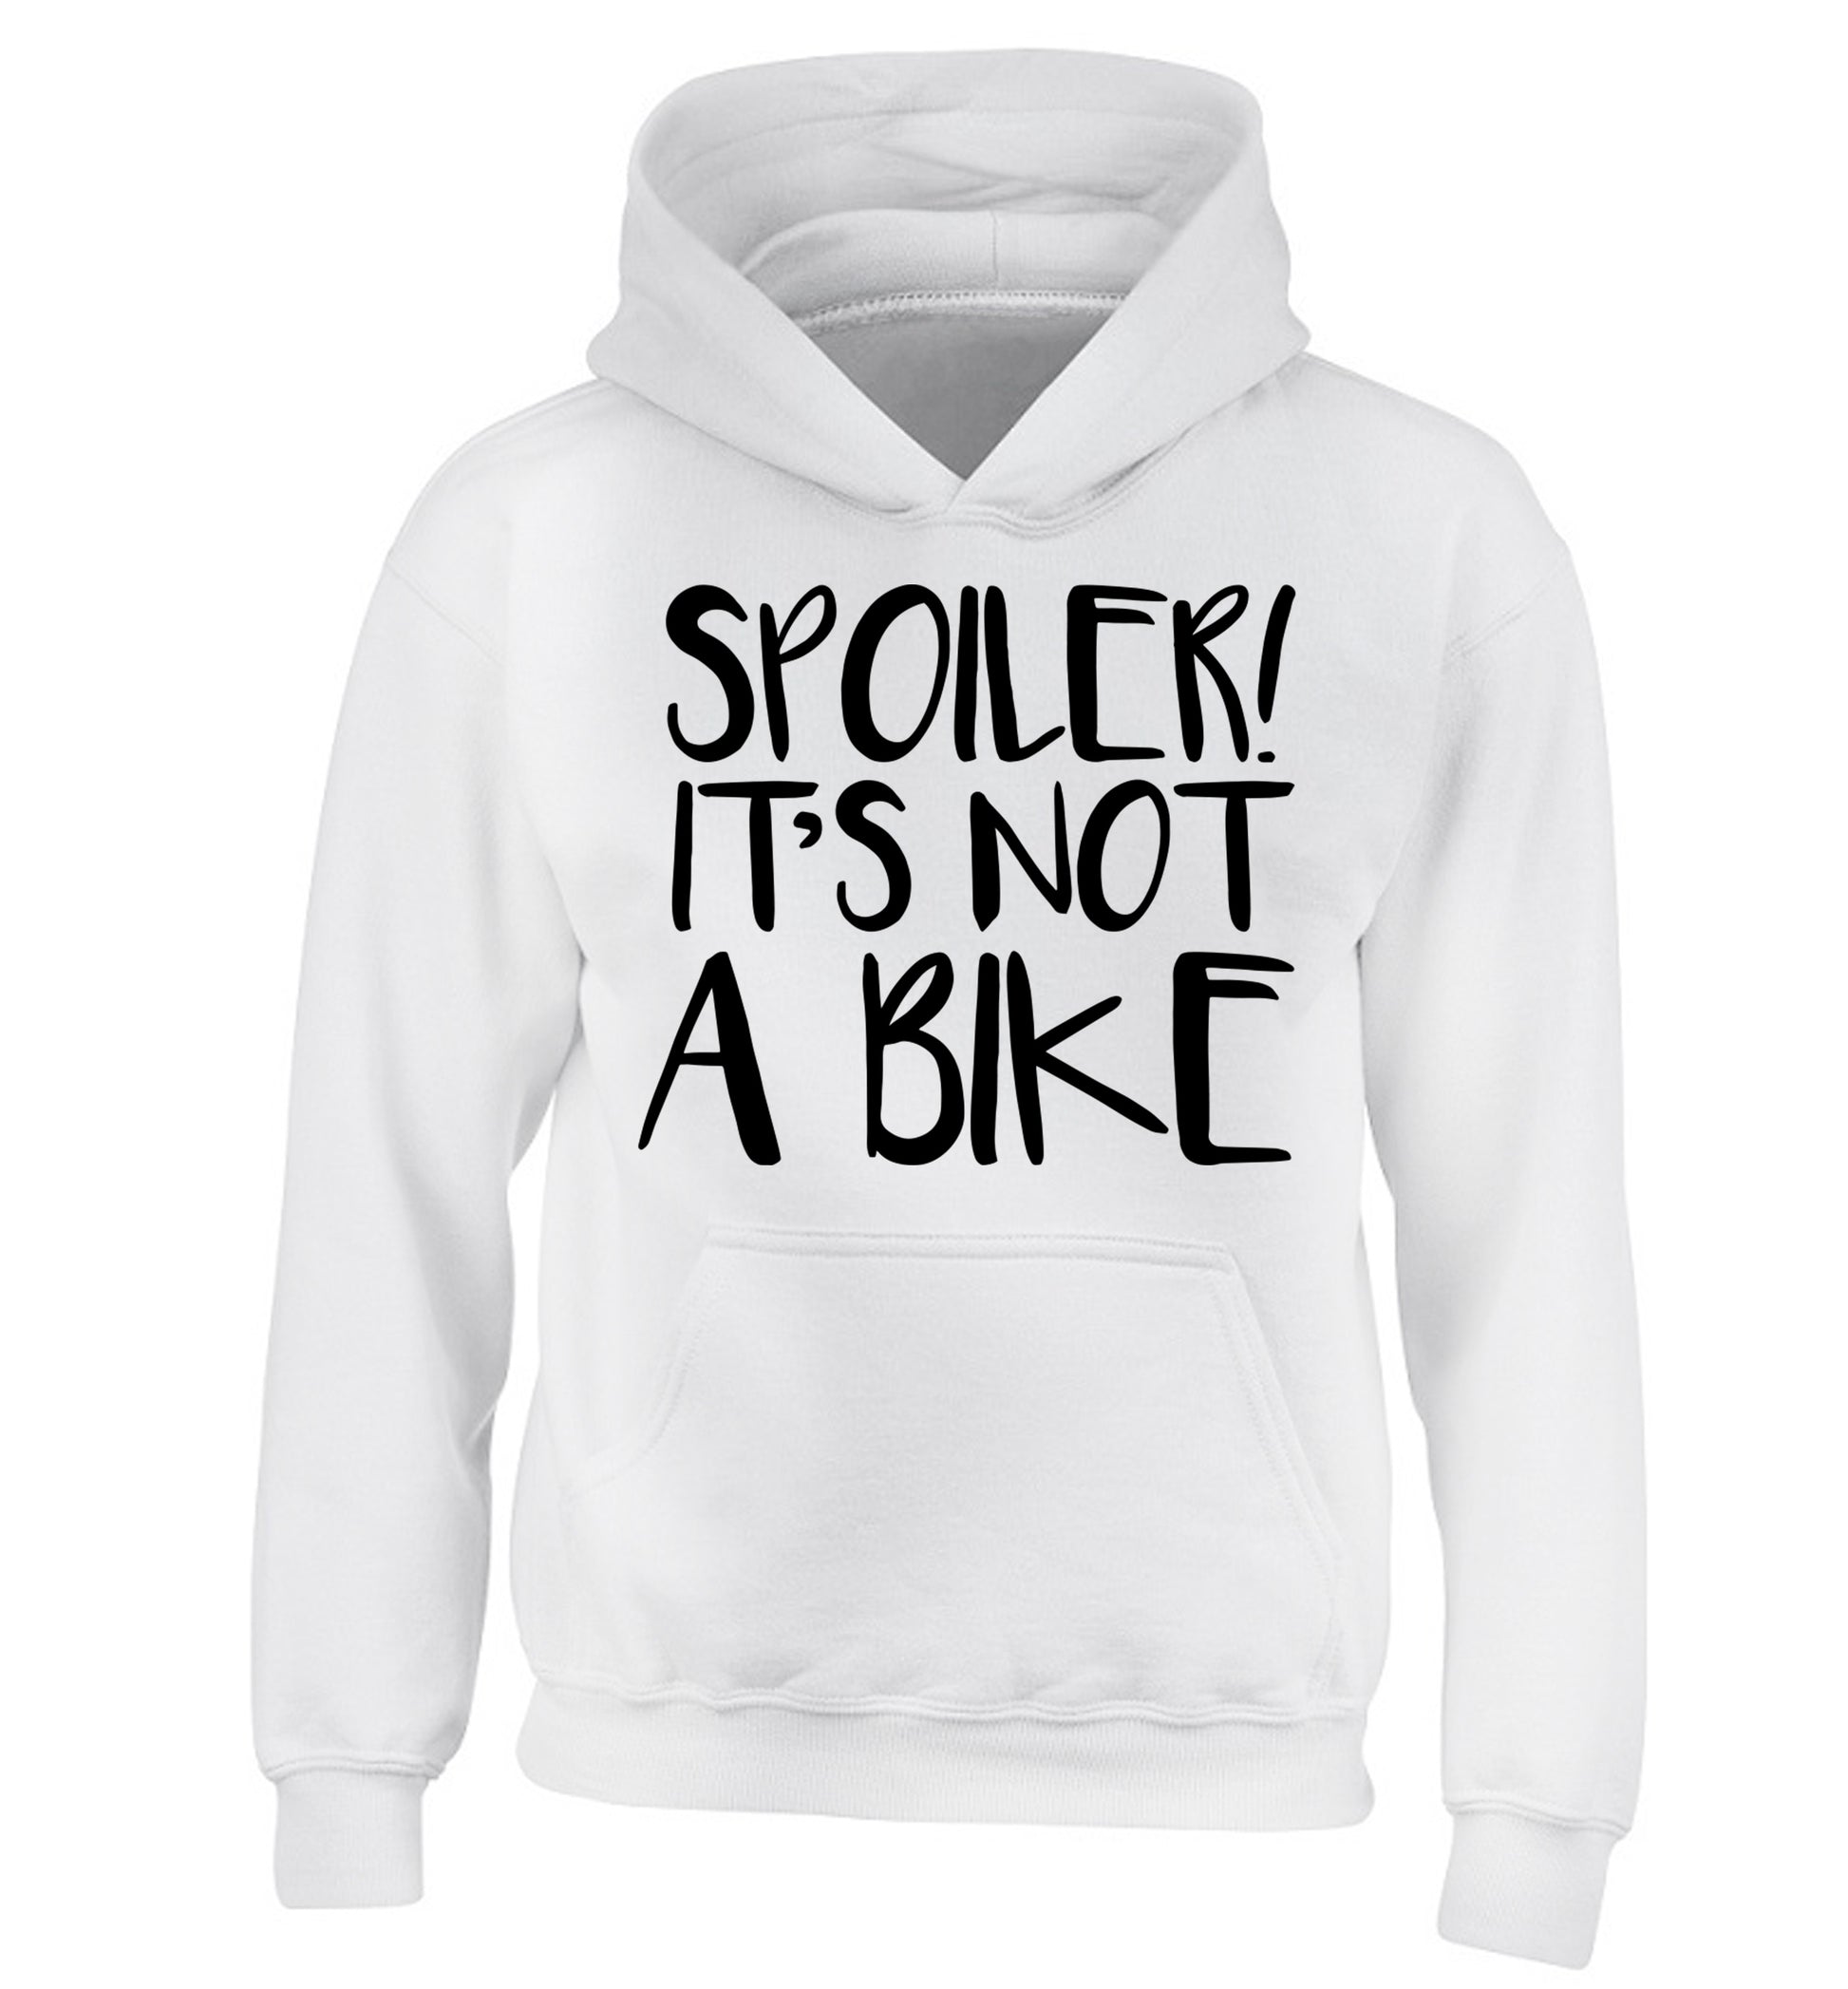 Spoiler it's not a bike children's white hoodie 12-13 Years